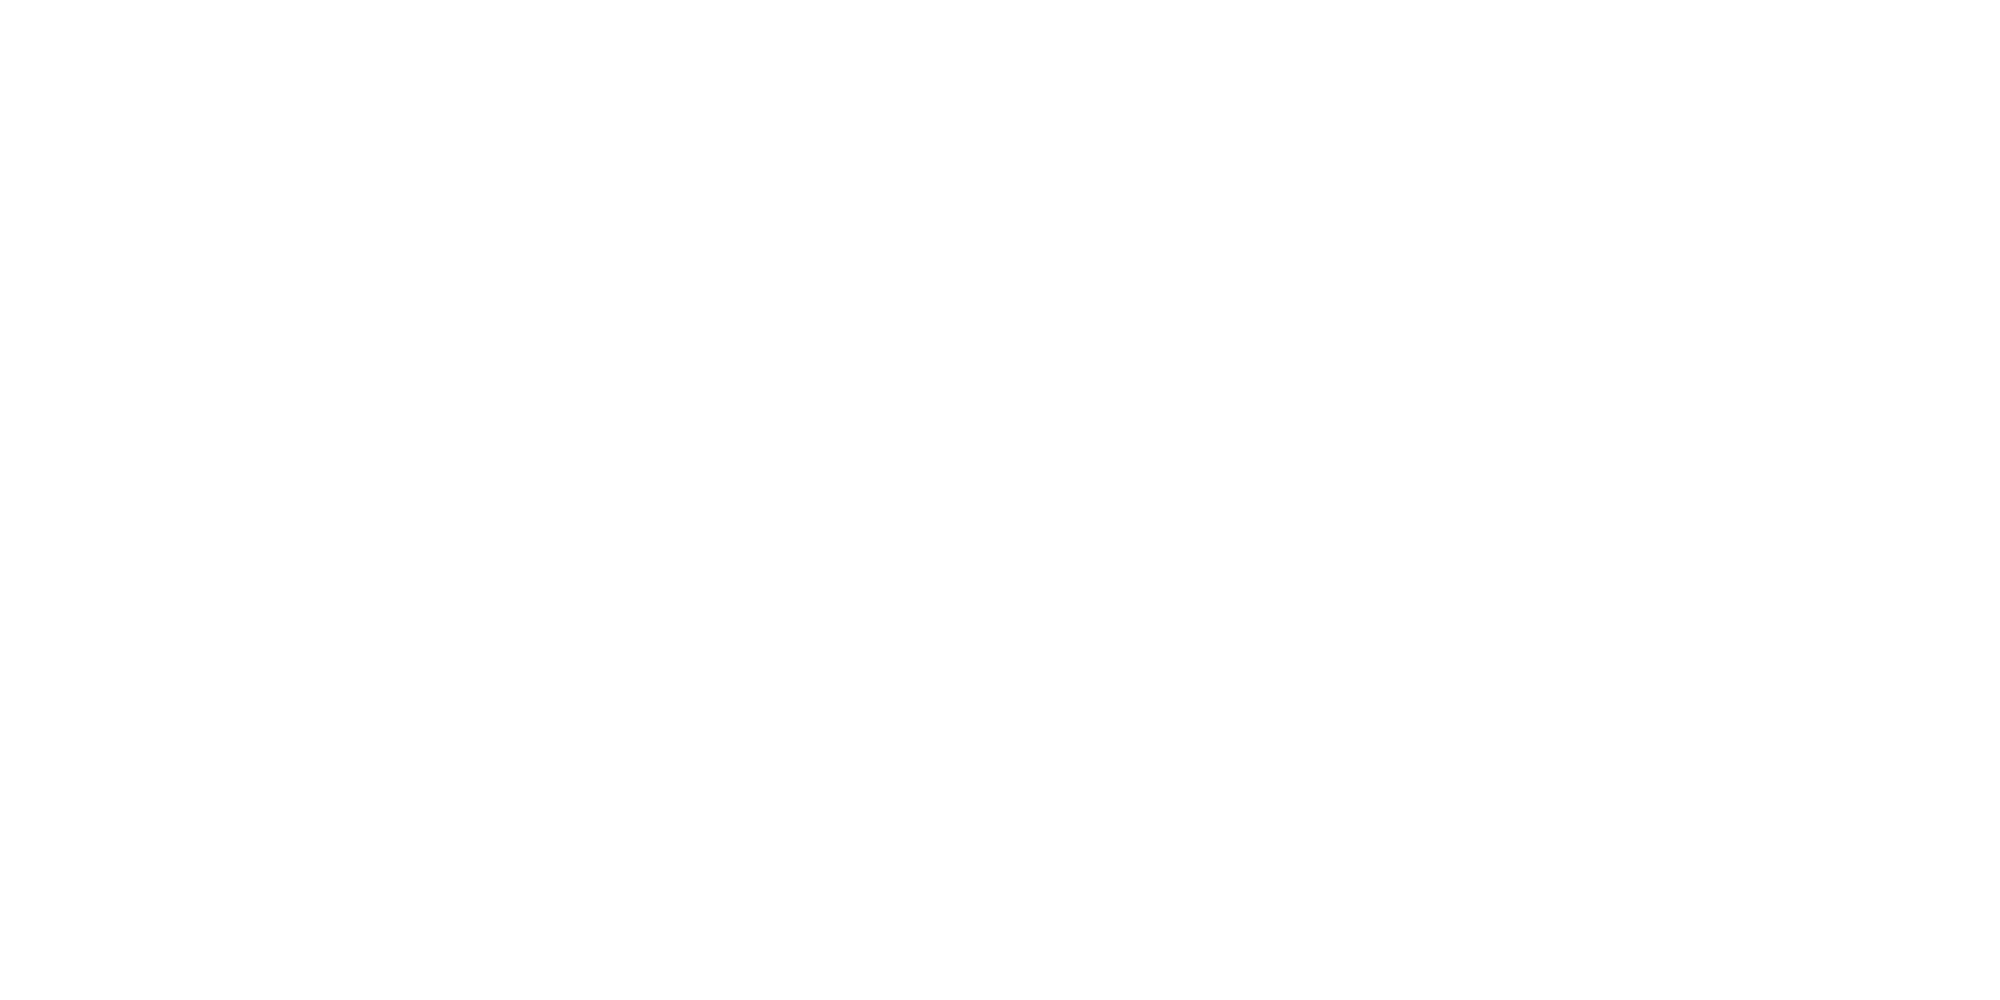 The City of Lethbridge